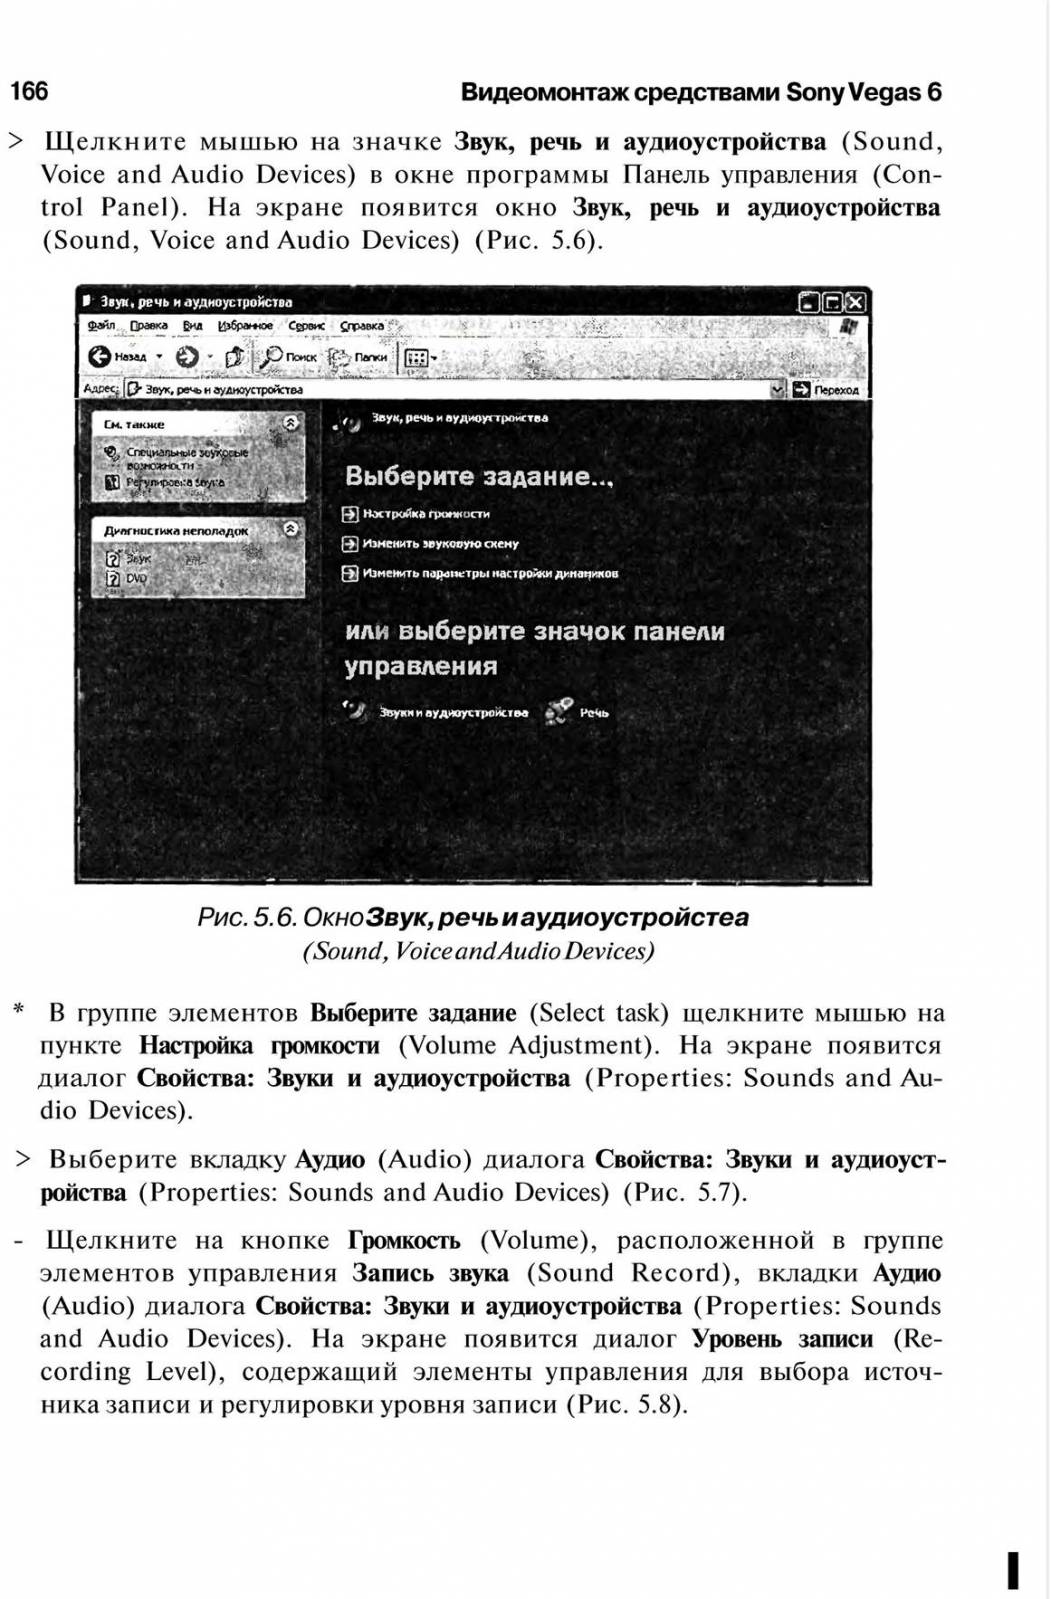 http://redaktori-uroki.3dn.ru/_ph/6/661634378.jpg